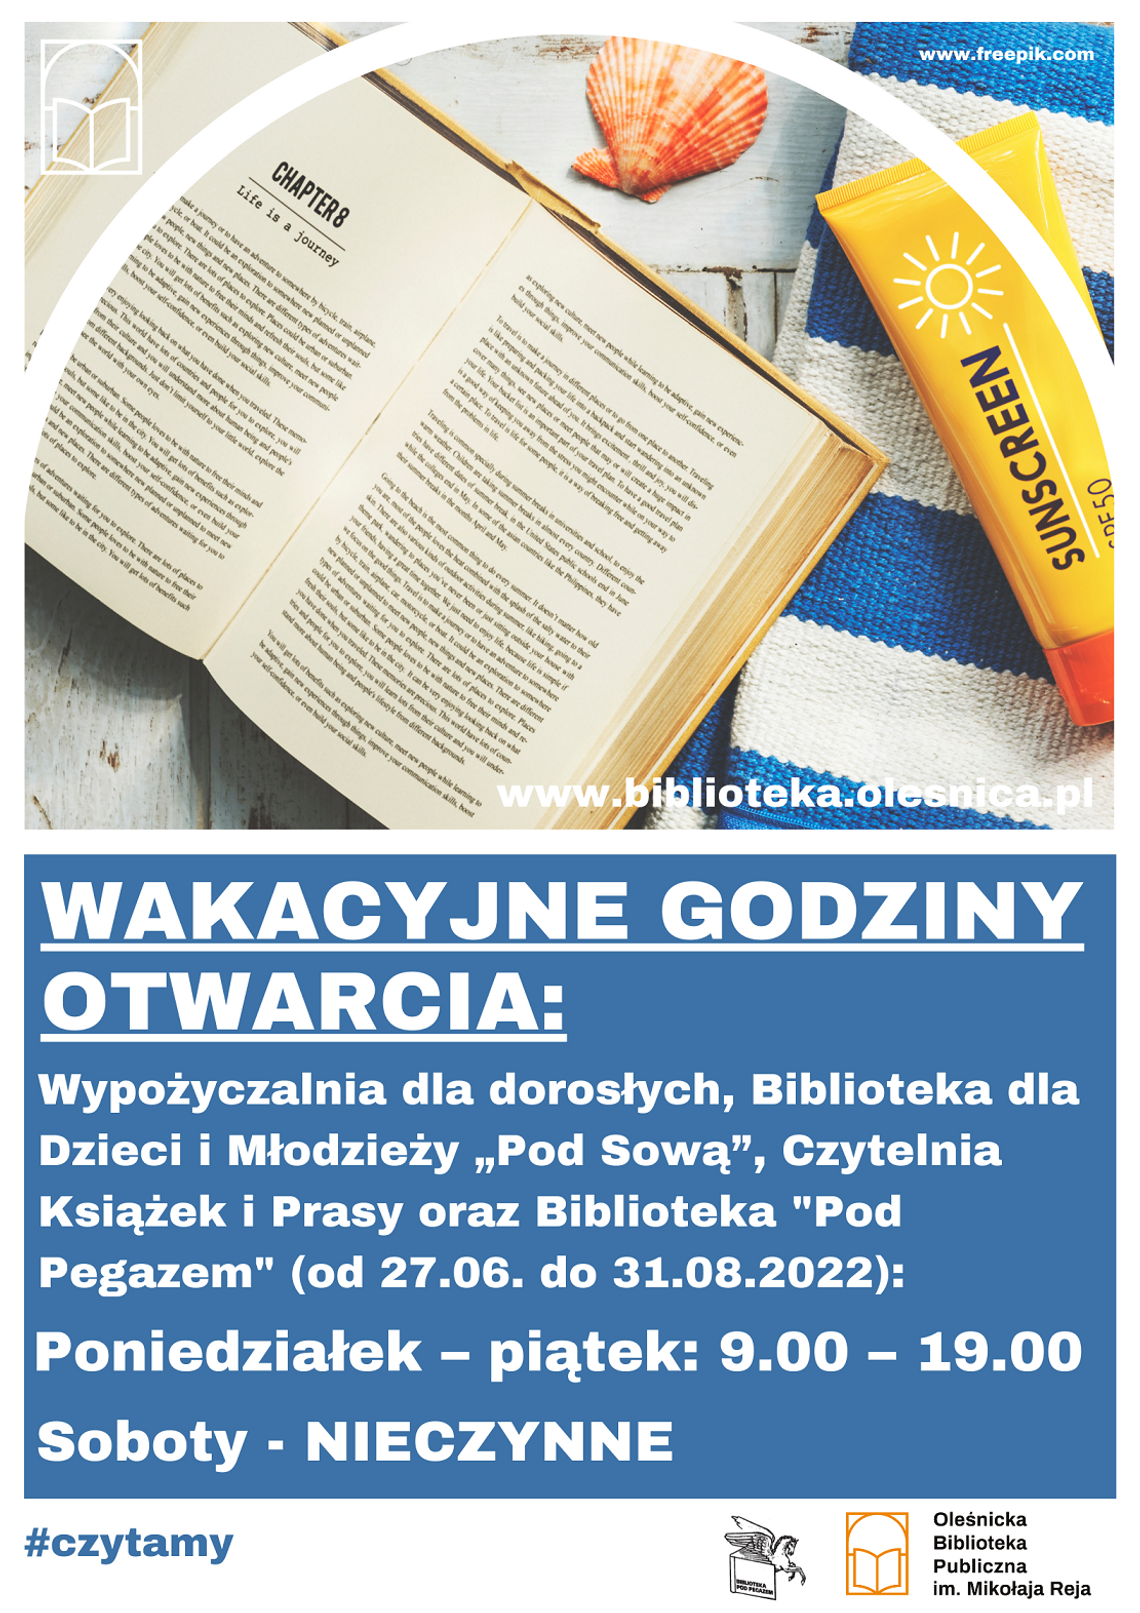 Wakacyjne godziny otwarcia oleśnickiej biblioteki